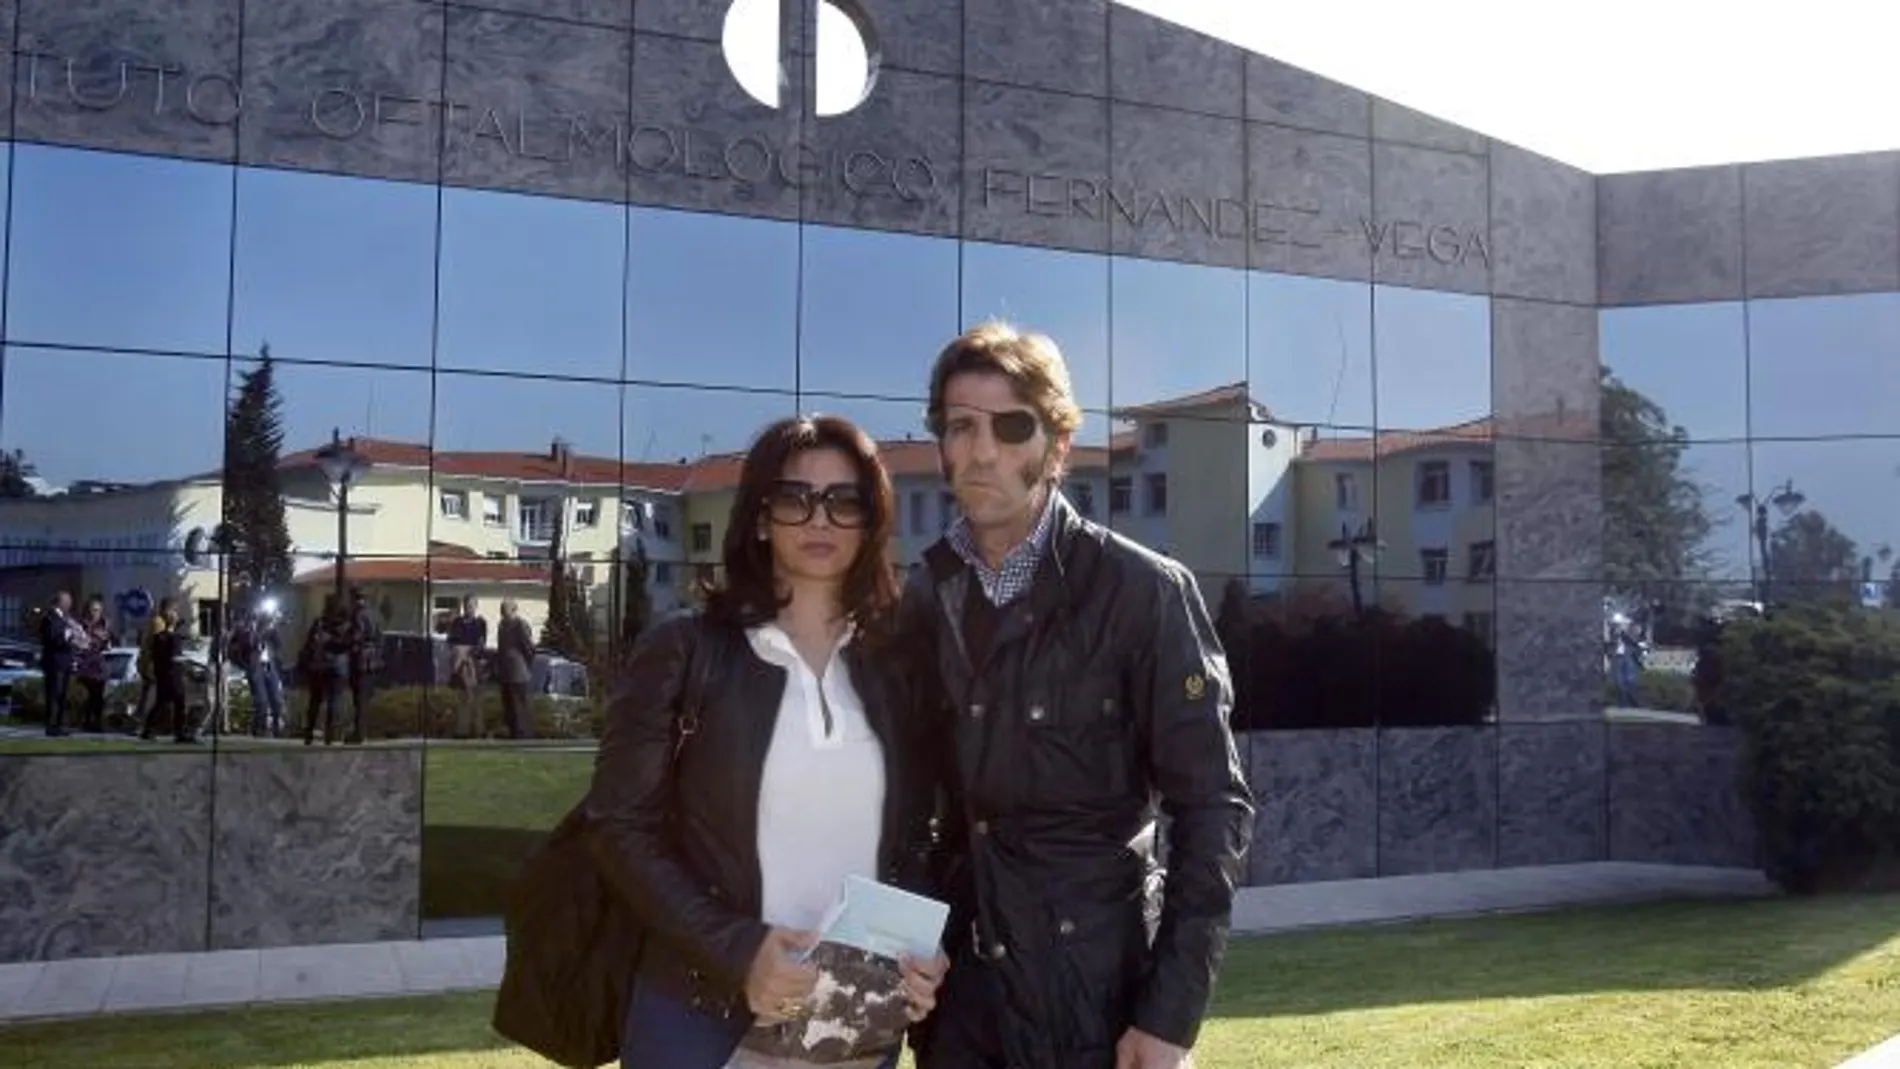 Padilla y su esposa, en imagen de archivo, junto a la Clínica Fernández-Vega